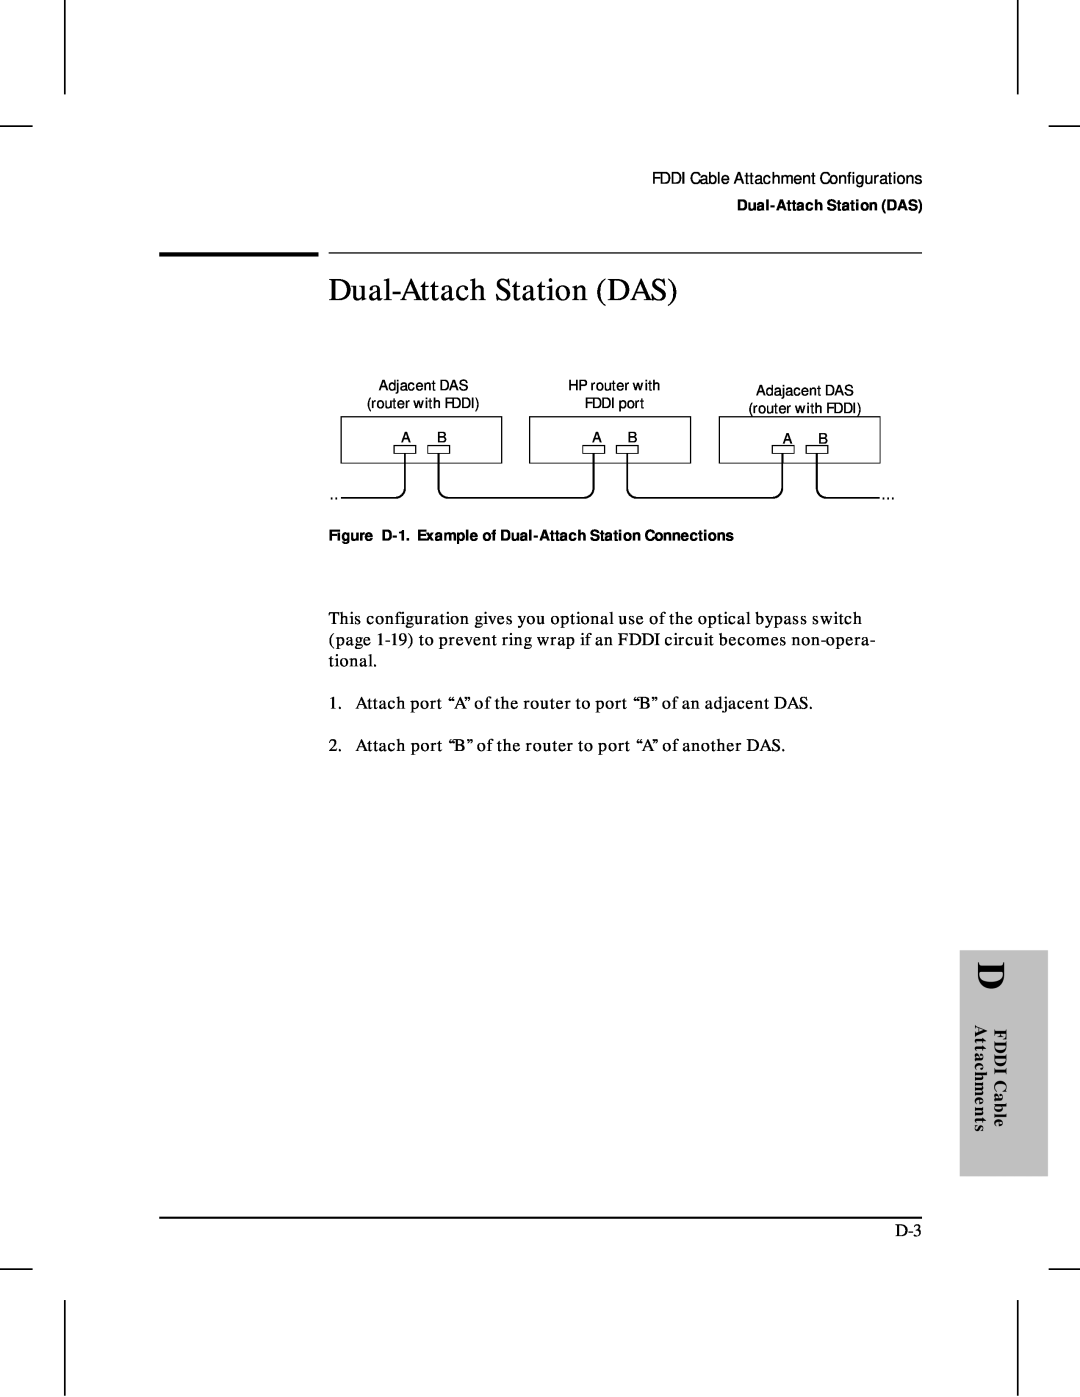 HP 480 manual Dual-Attach Station DAS, Figure D-1. Example of Dual-Attach Station Connections 